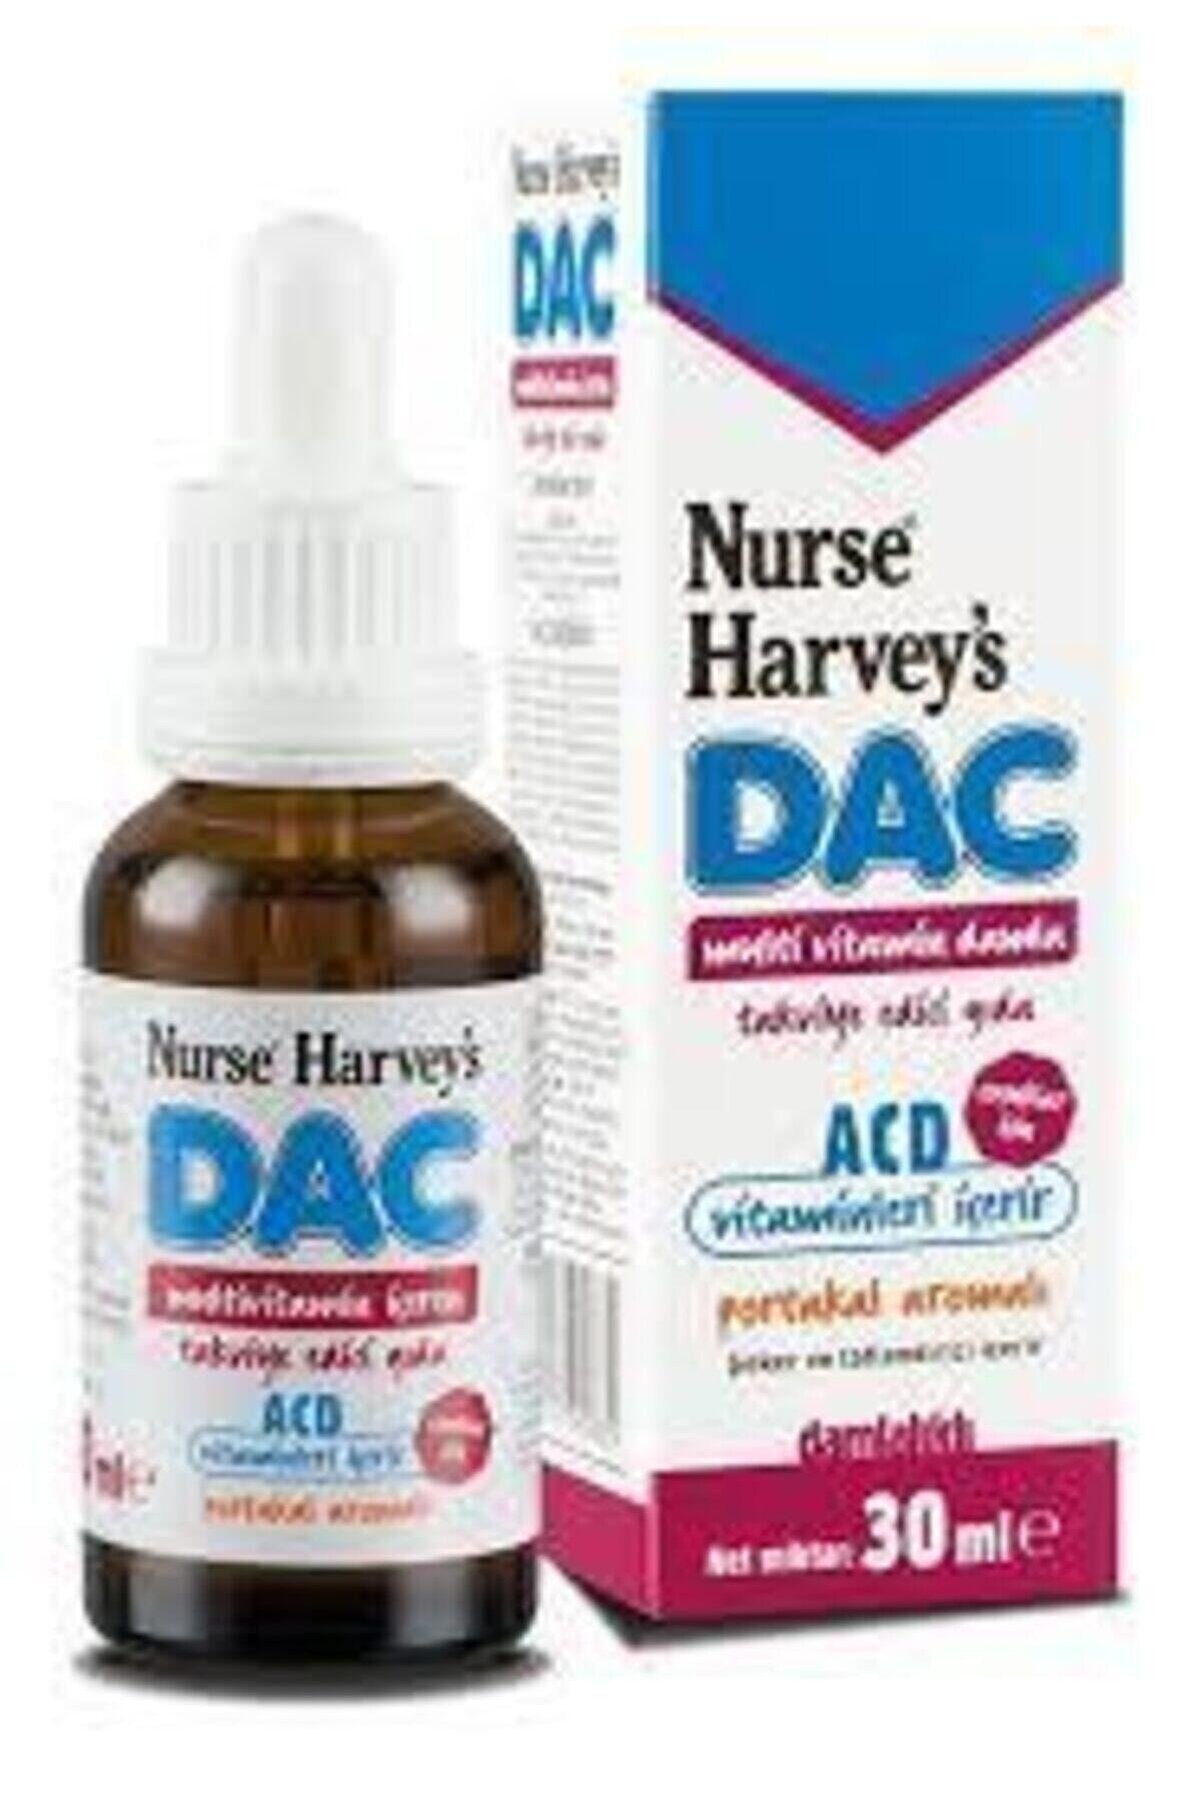 Nurse Harvey's Dac Portakal Aromalı Multivitamin Damla 30 ml